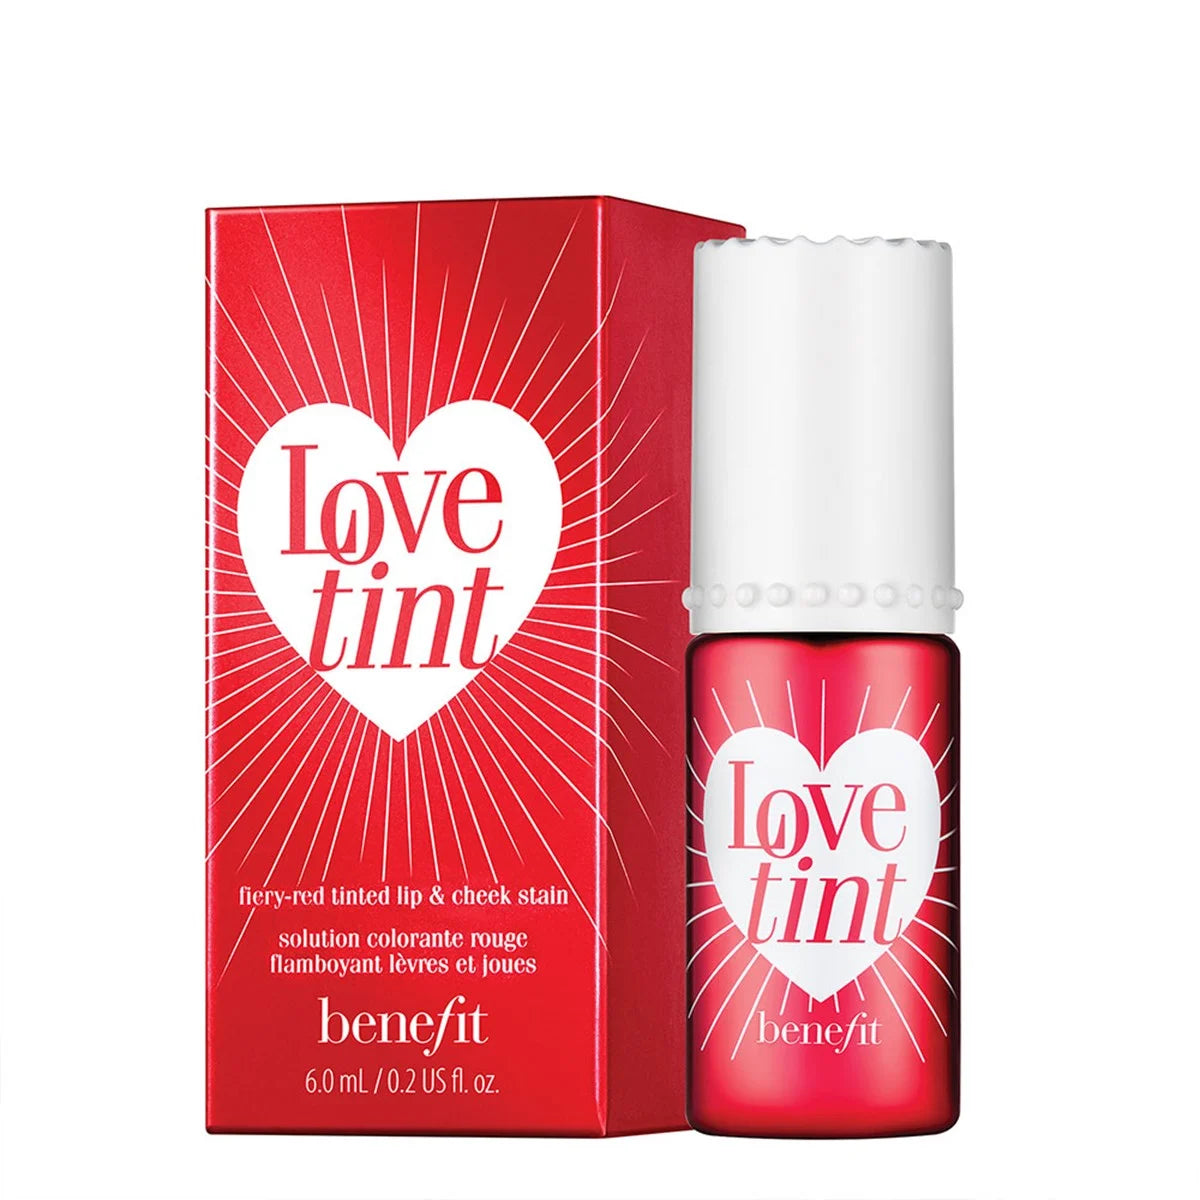 Benefit - Lovetint Lip & Cheek Stain